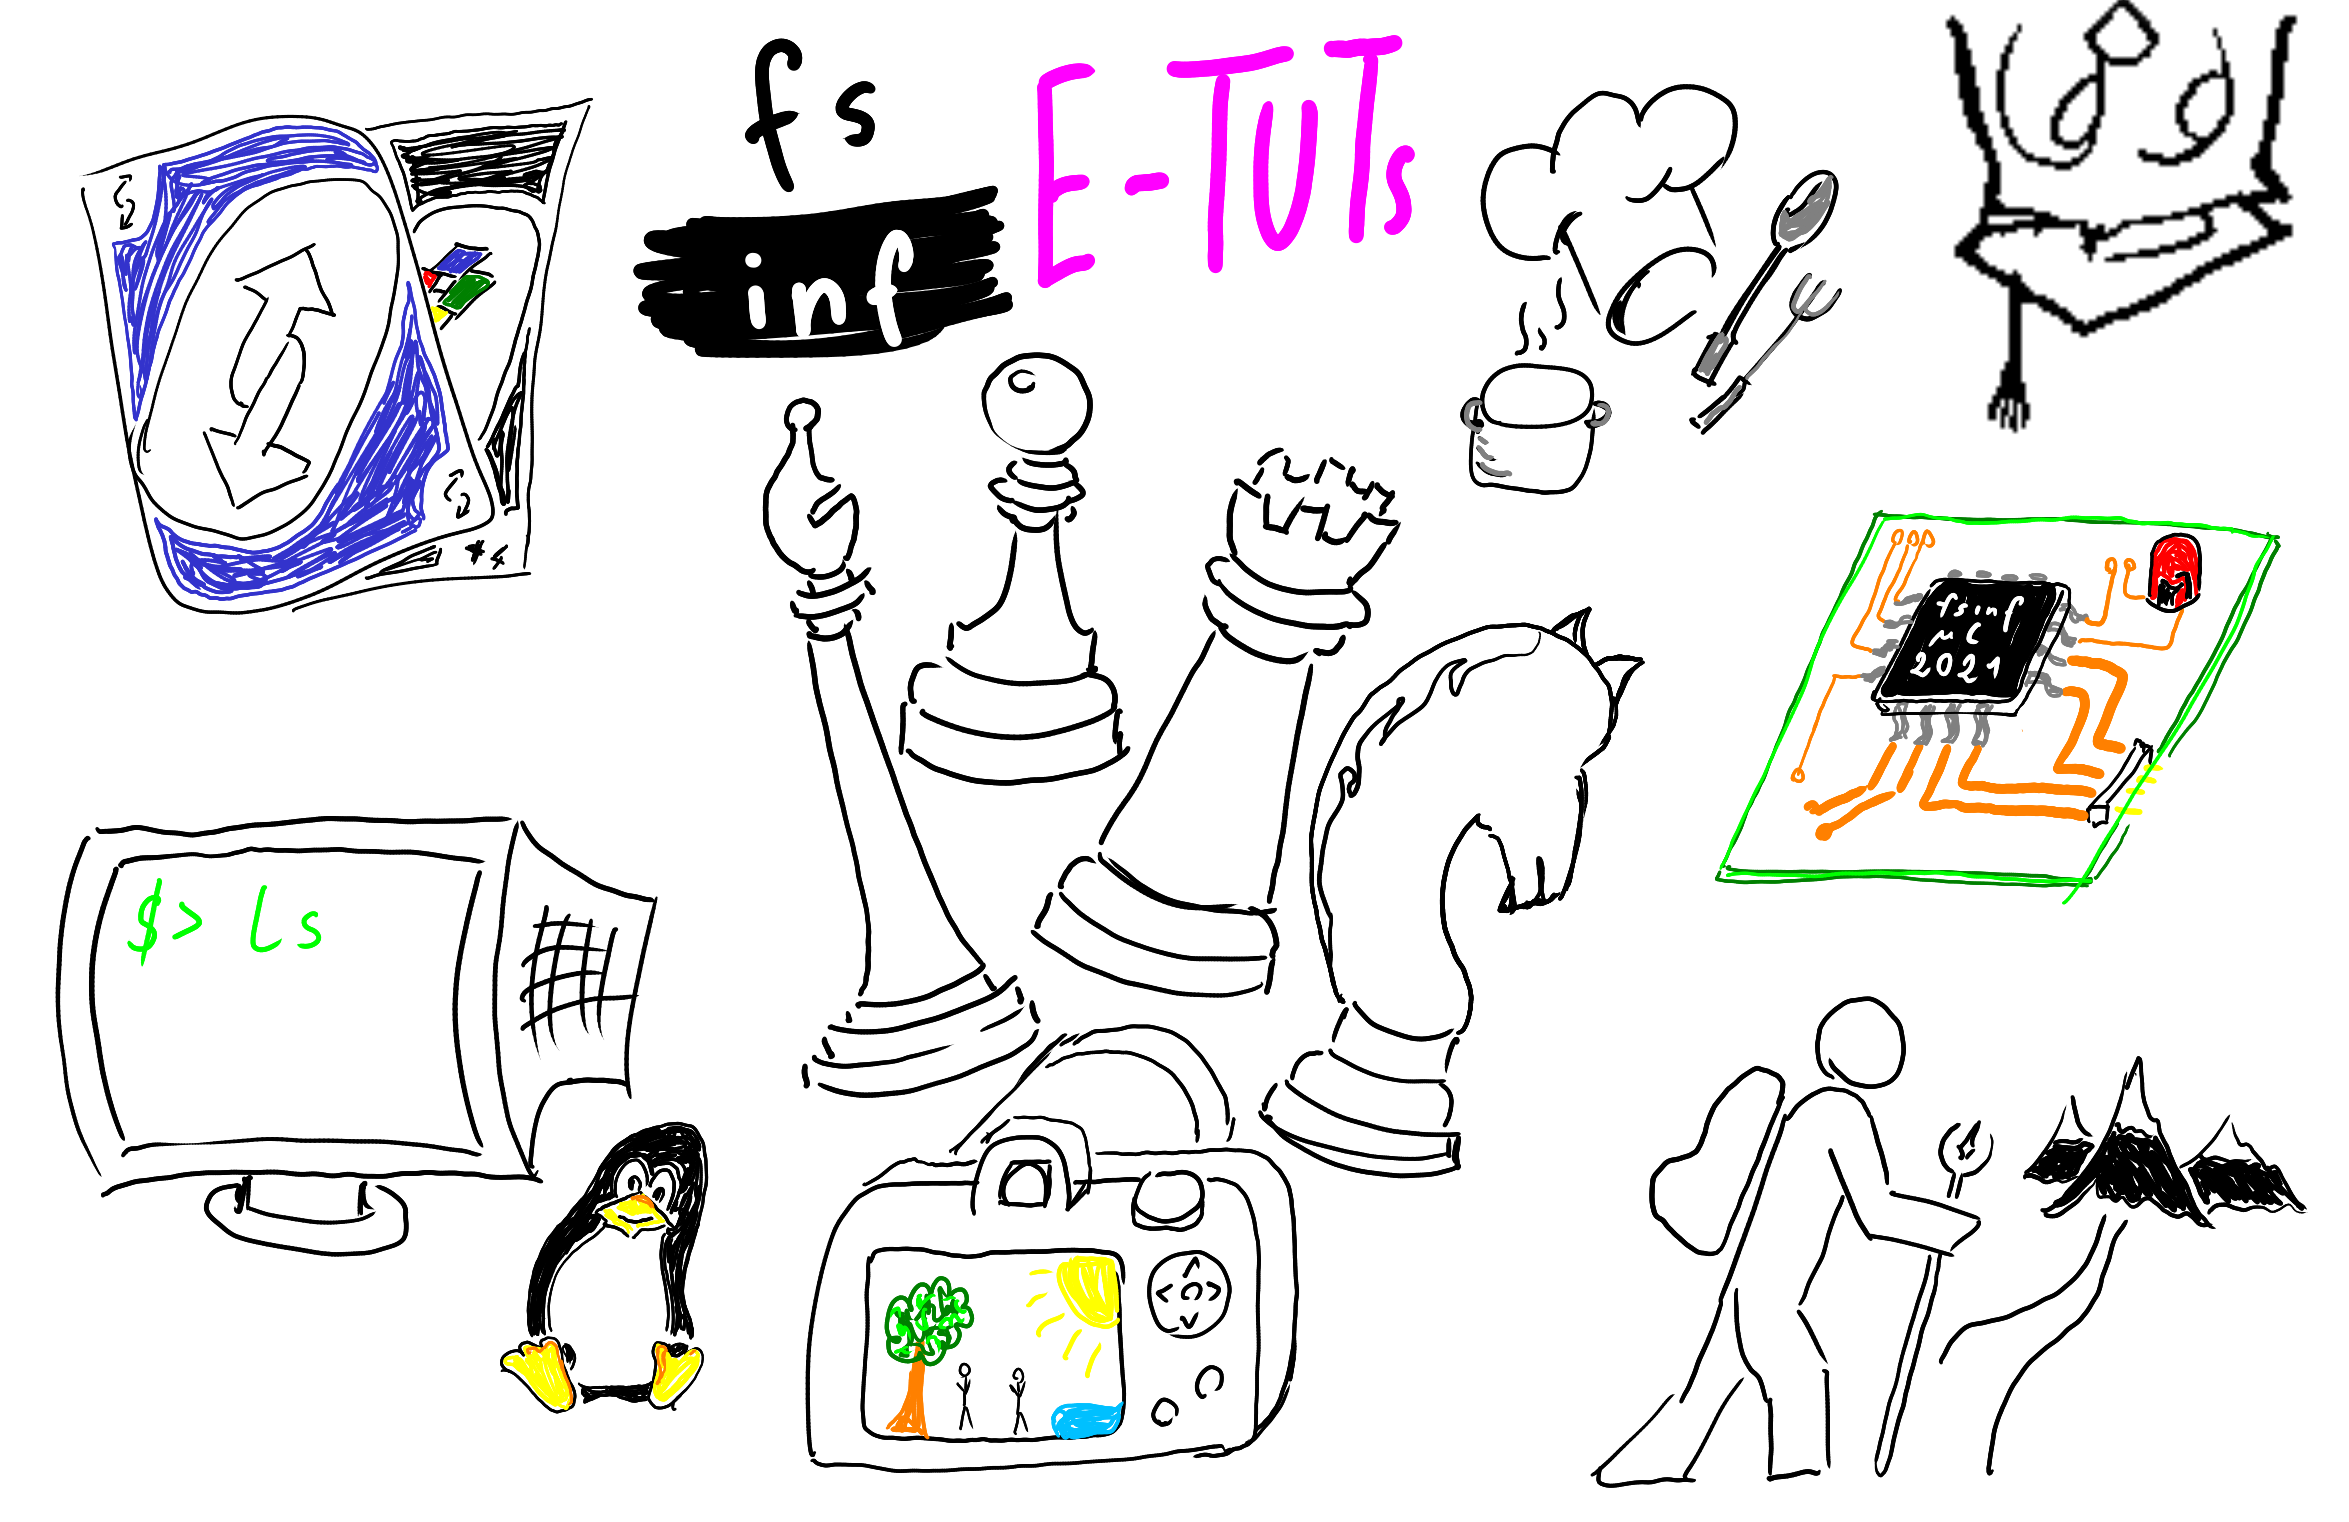 Verschiedene Symbole Grafiken zeigen unterschiedliche TÃ¤tigkeiten, die im Rahmen der FSINF E-Tuts gemacht werden kÃ¶nnen, darunter Schach, Fotografie, Kochen, Wandern, & Command-Line Tools.